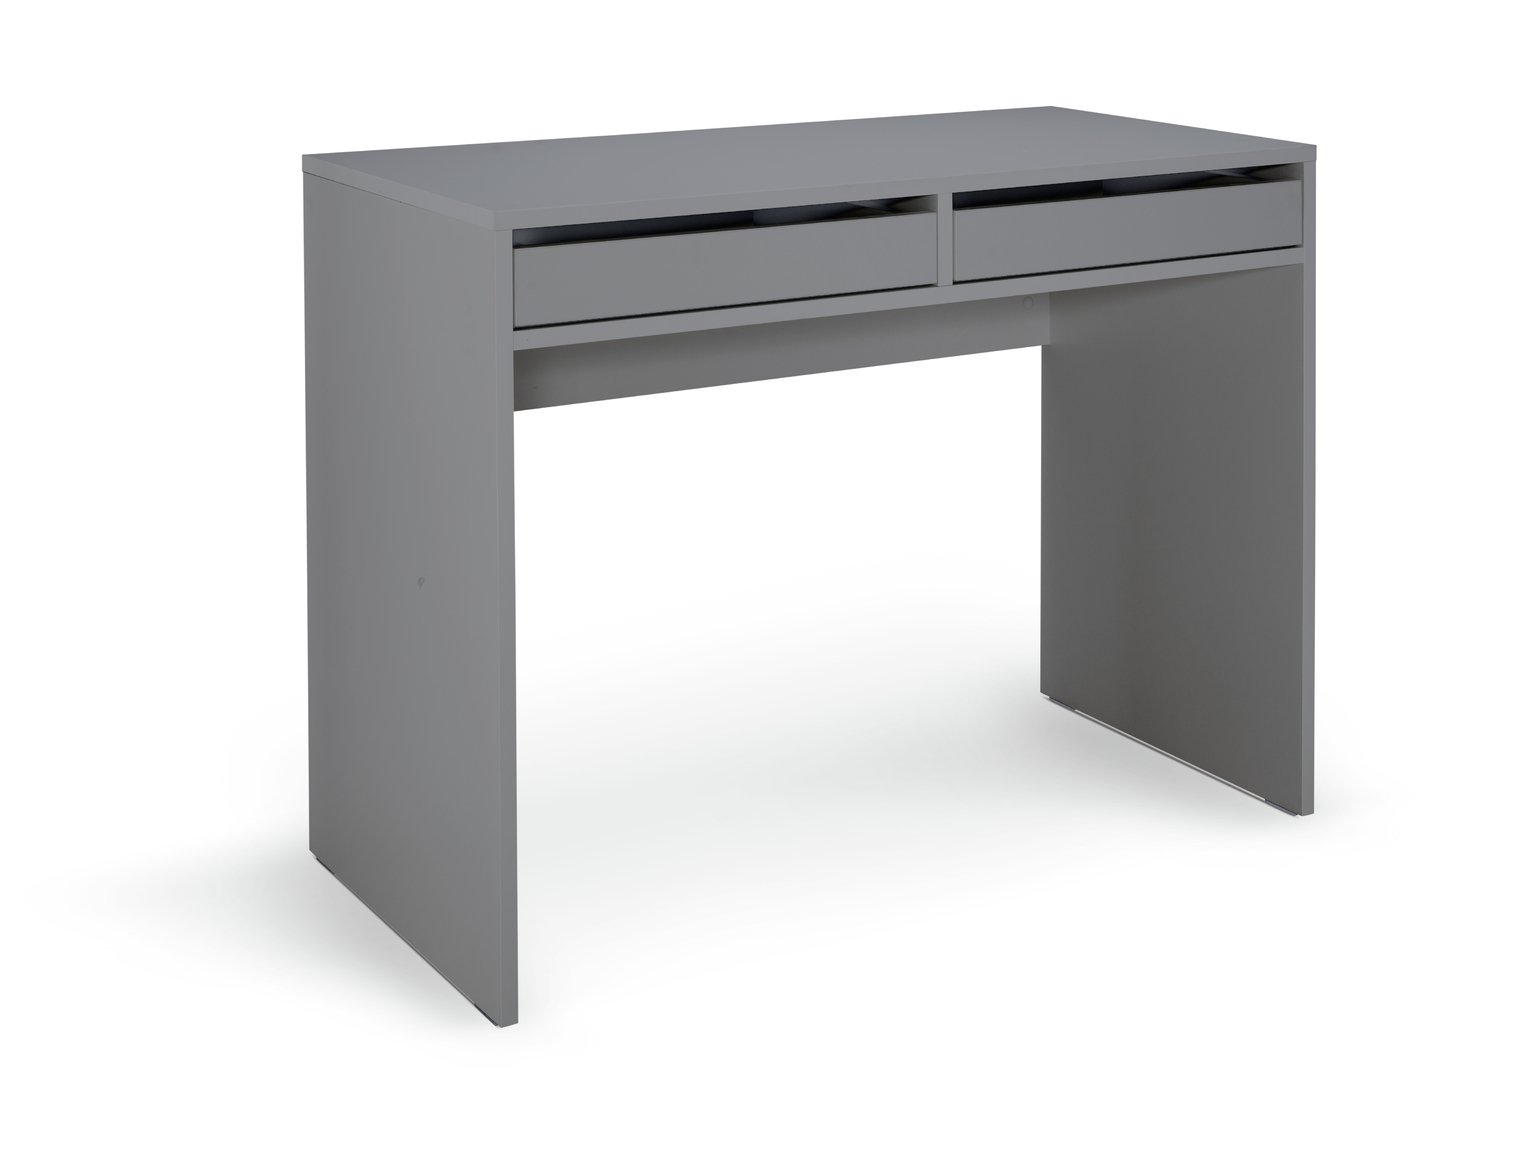 Habitat Pepper 2 Drawer Desk - Grey